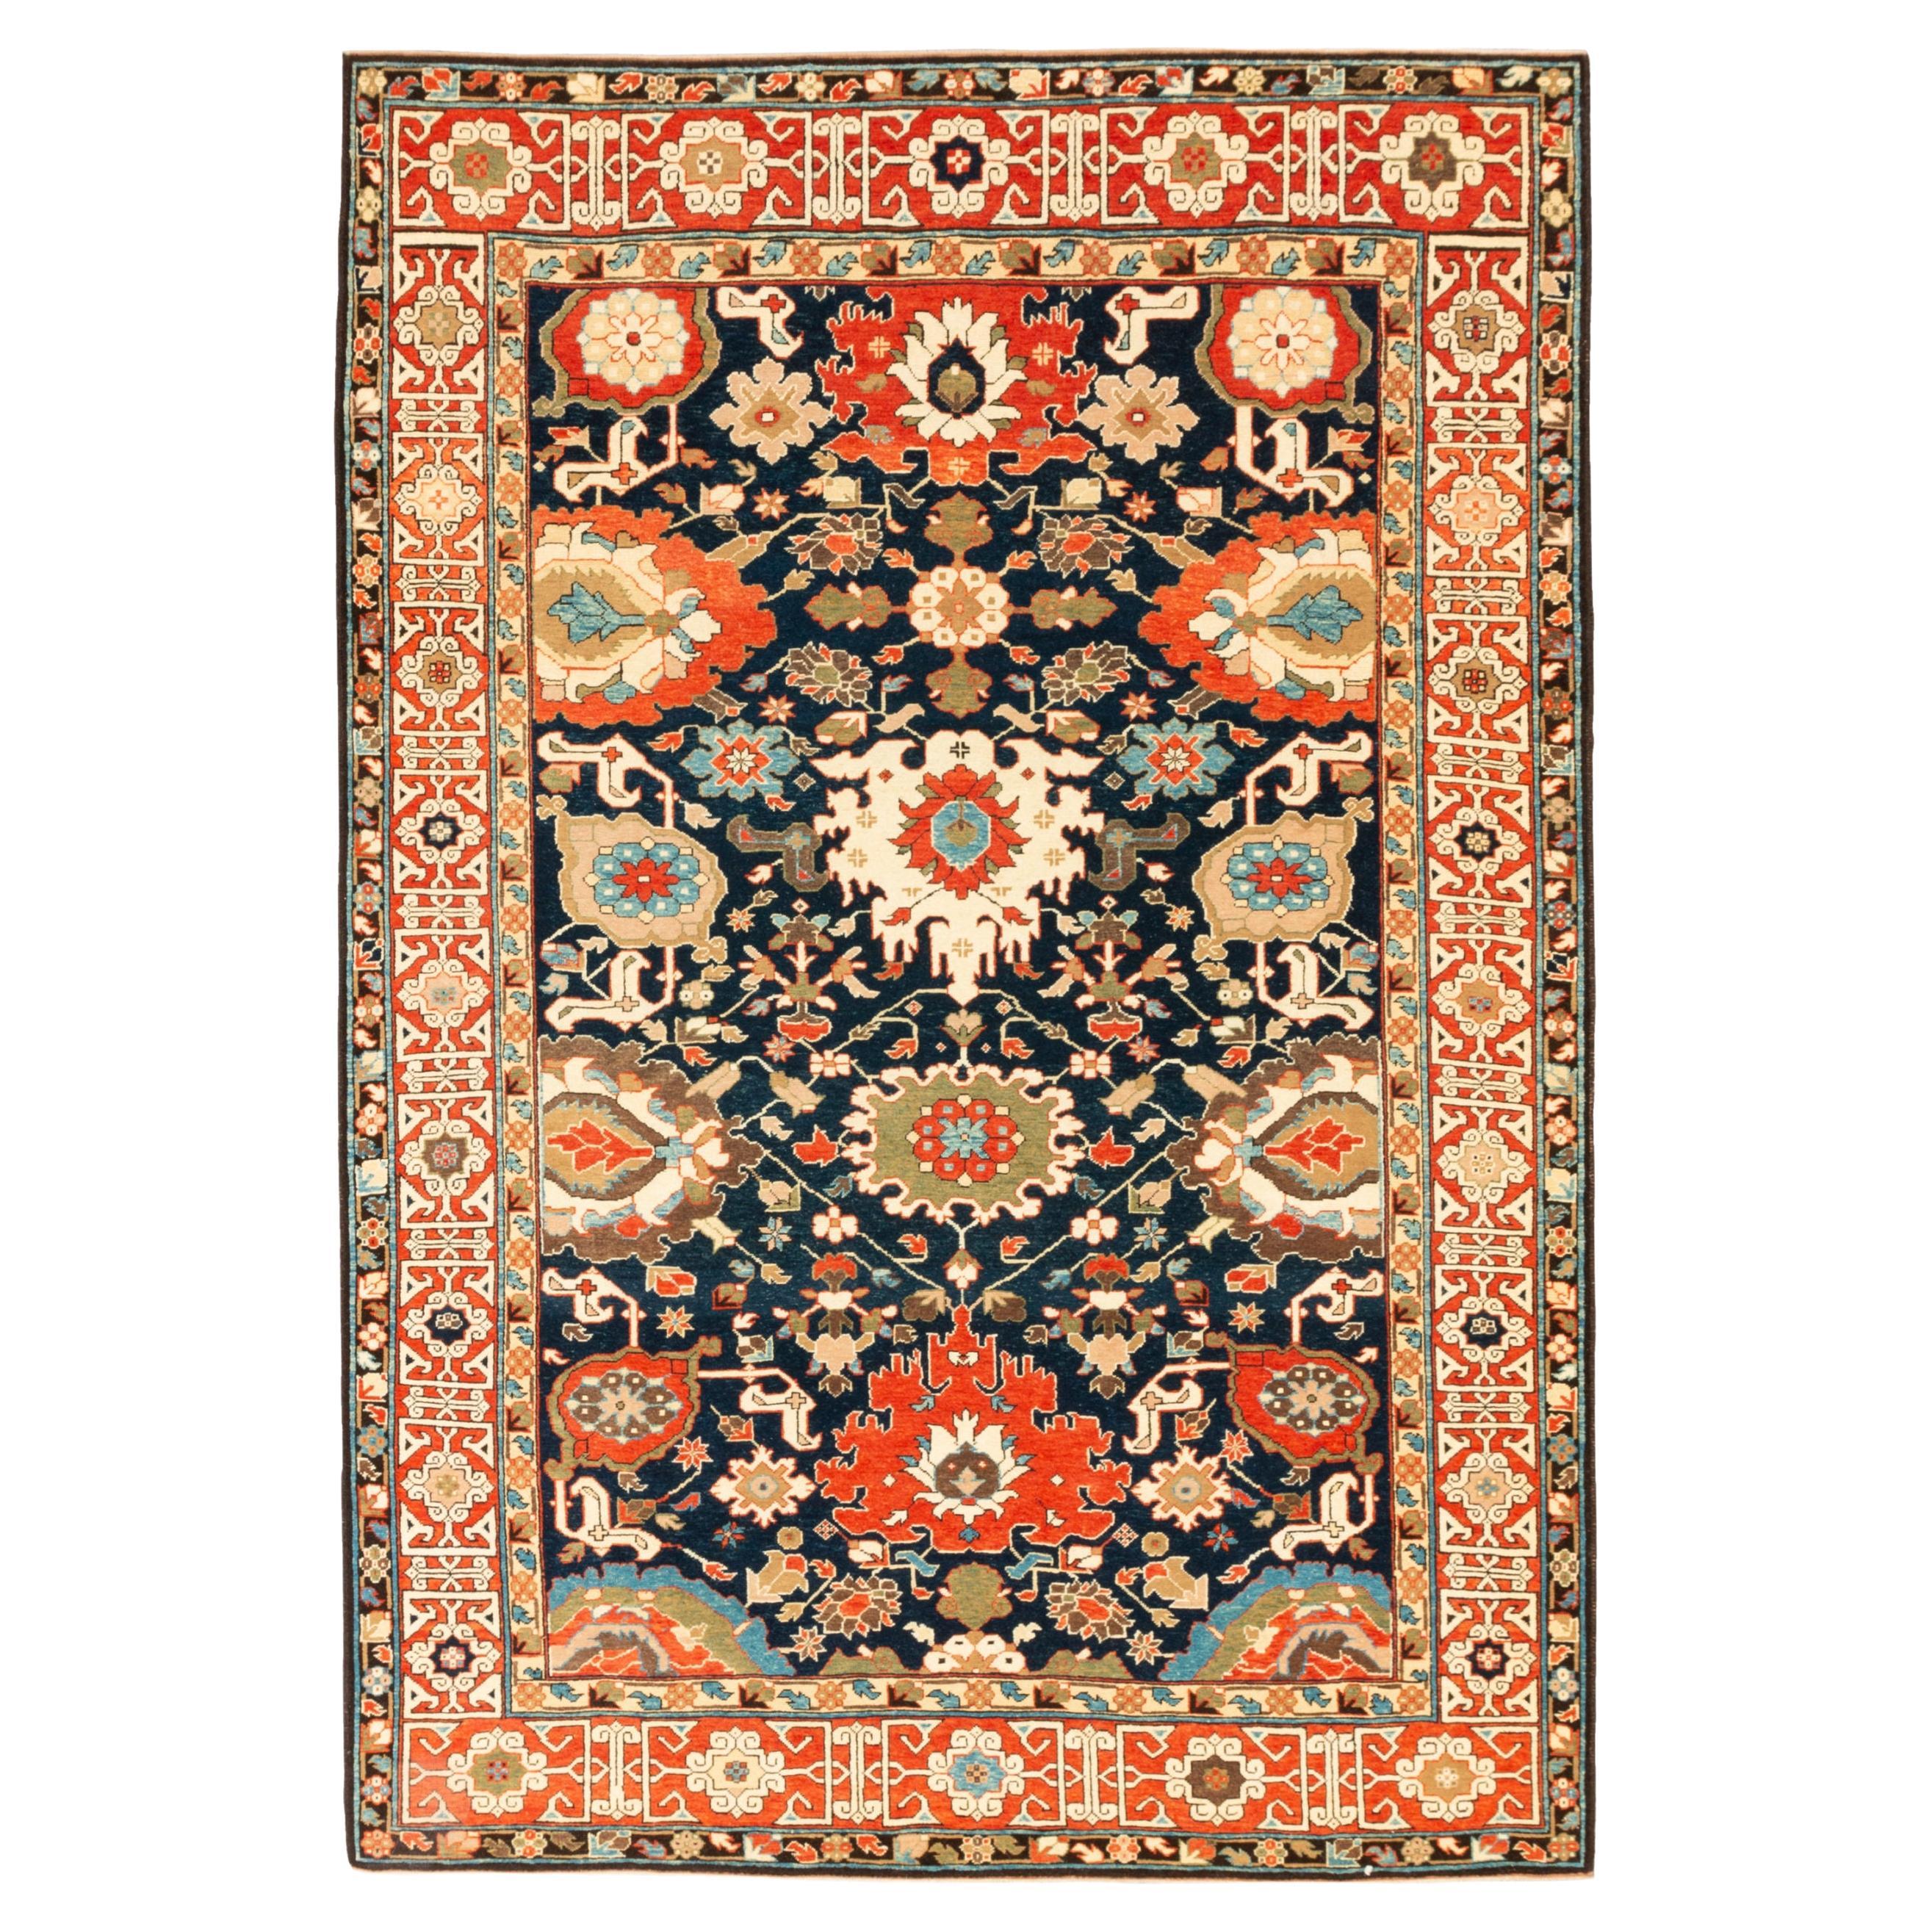 Ararat Rugs Harshang Design mit kufischer Bordüre Teppich Revival Teppich, natürlich gefärbt